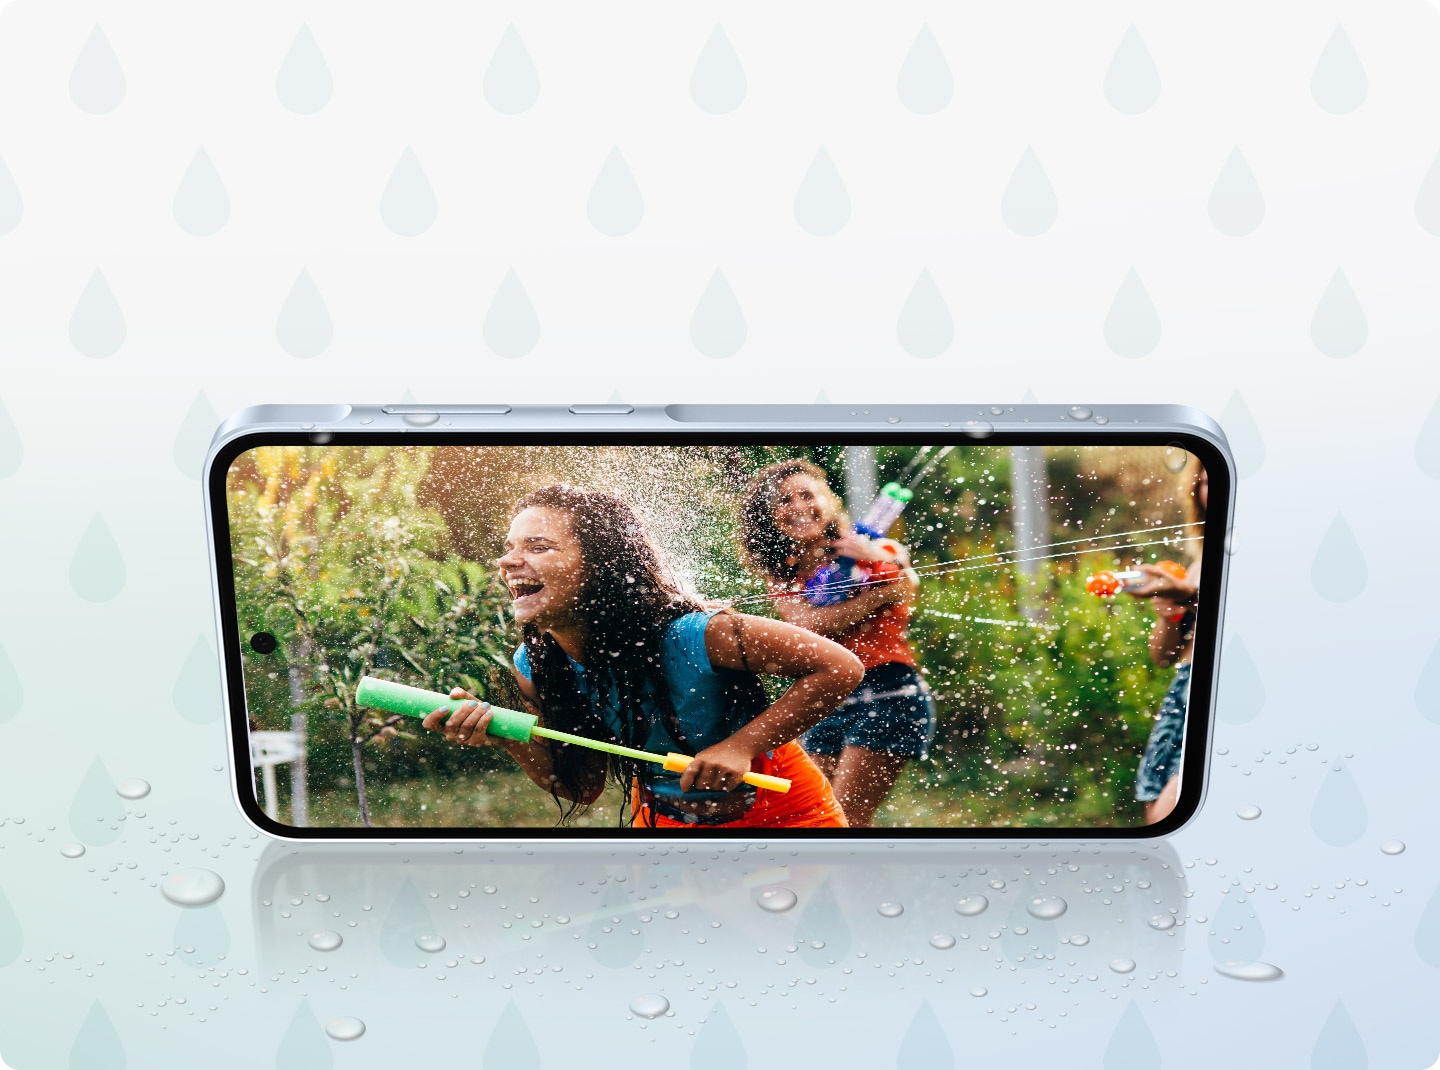  Смартфон в альбомной ориентации с изображением двух девушек, играющих в воде. Телефон в окружении капель воды.